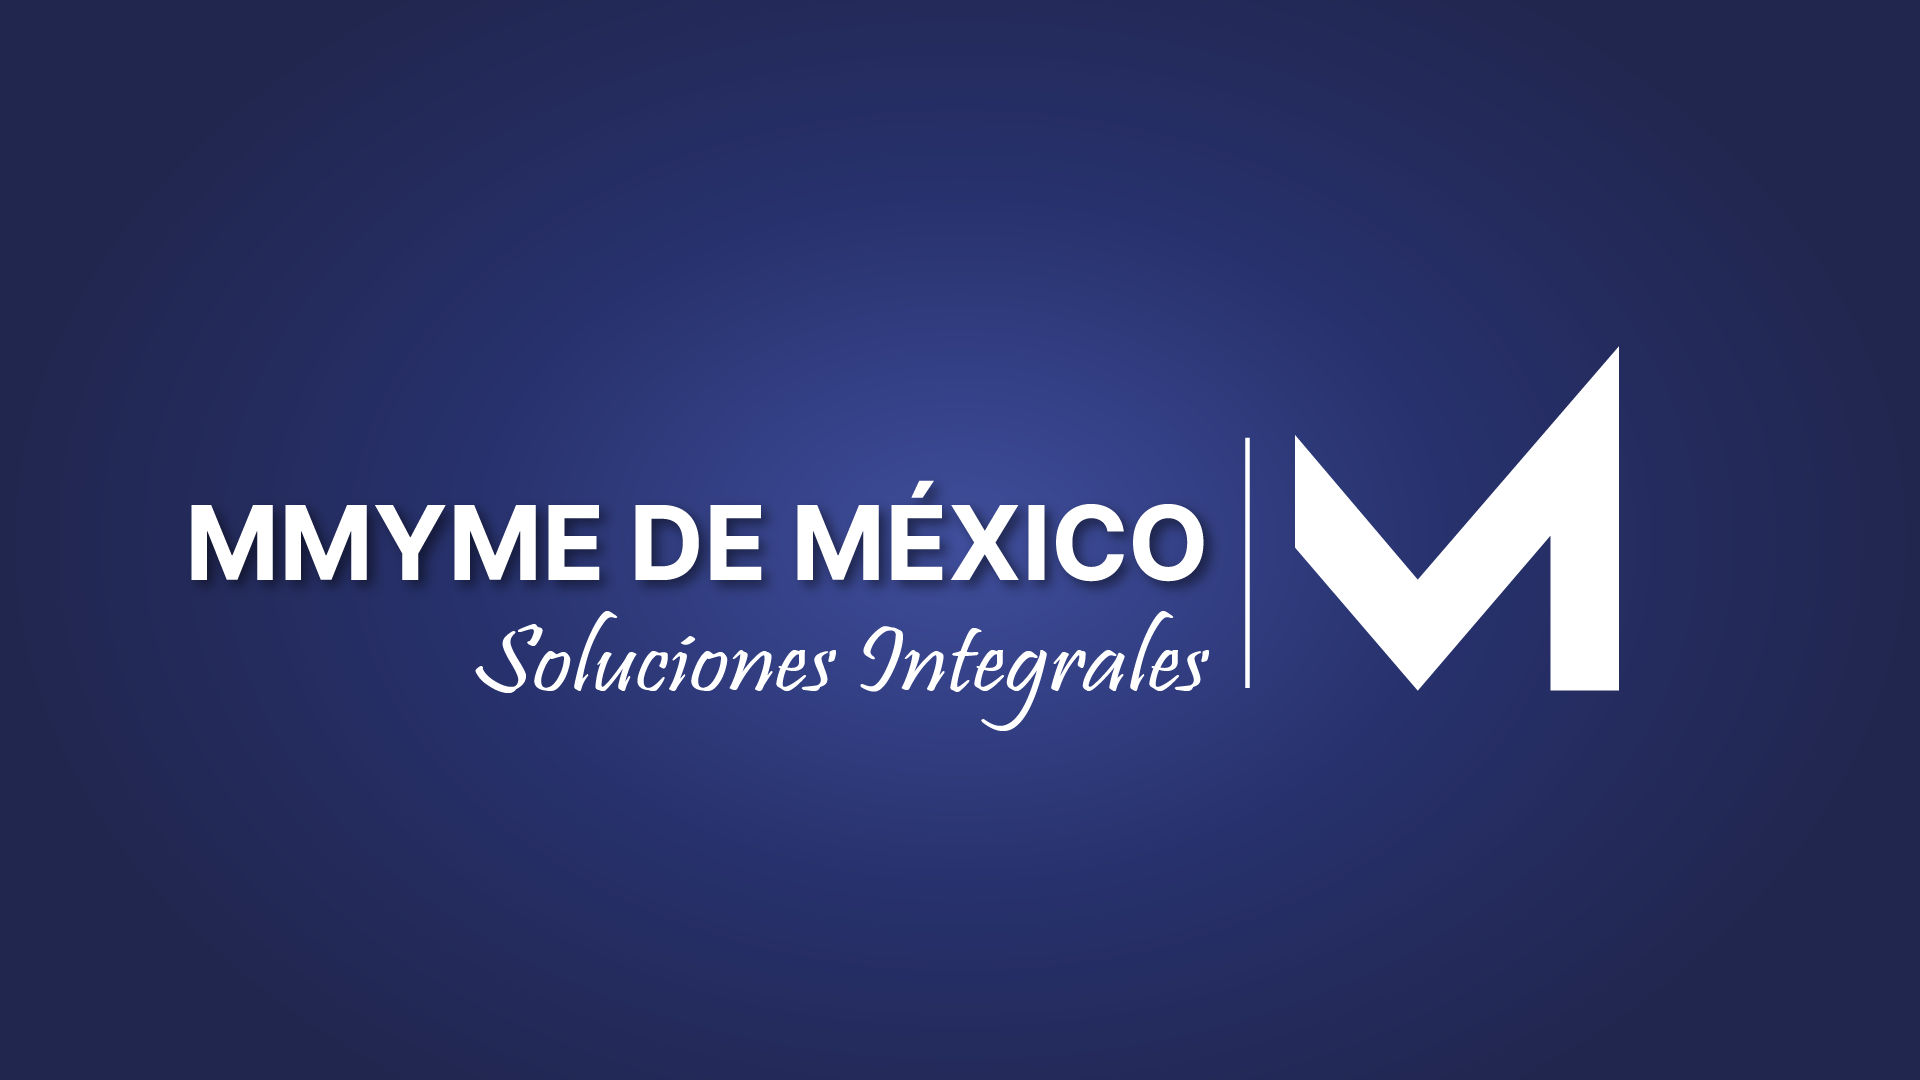 Mmyme de México Soluciones Integrales